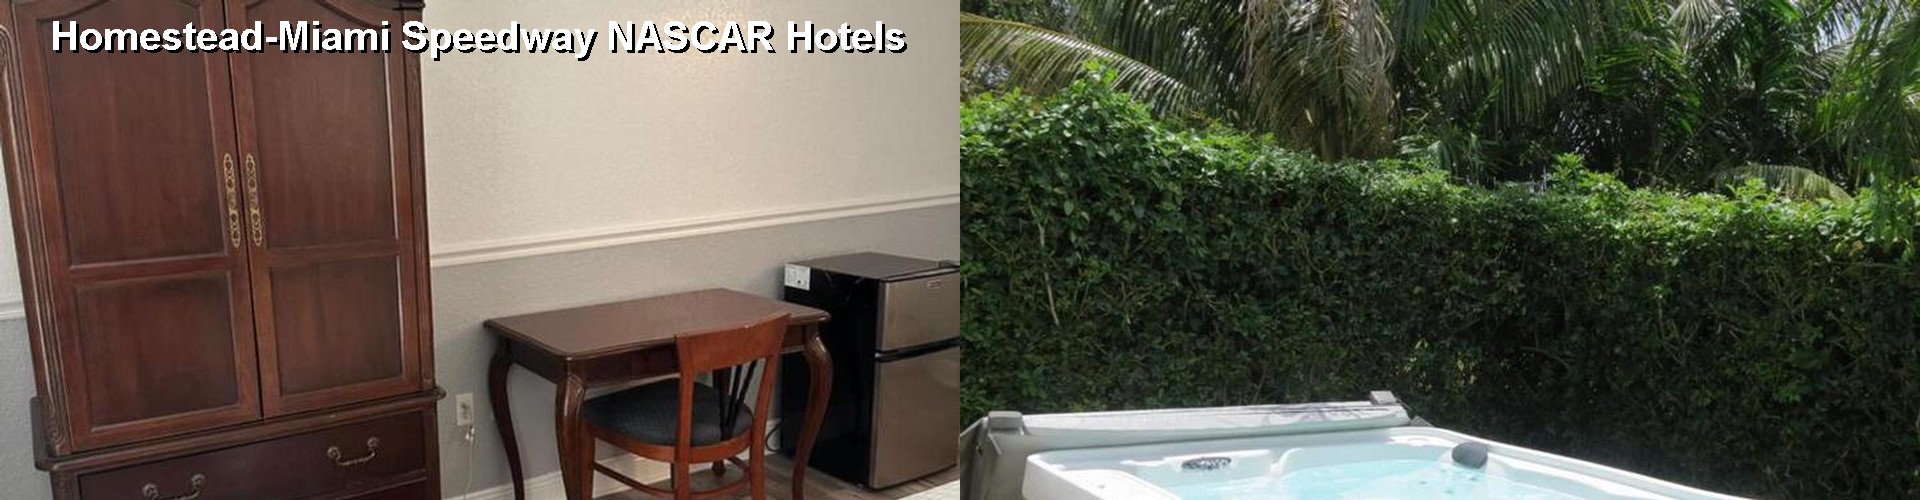 5 Best Hotels near Homestead-Miami Speedway NASCAR